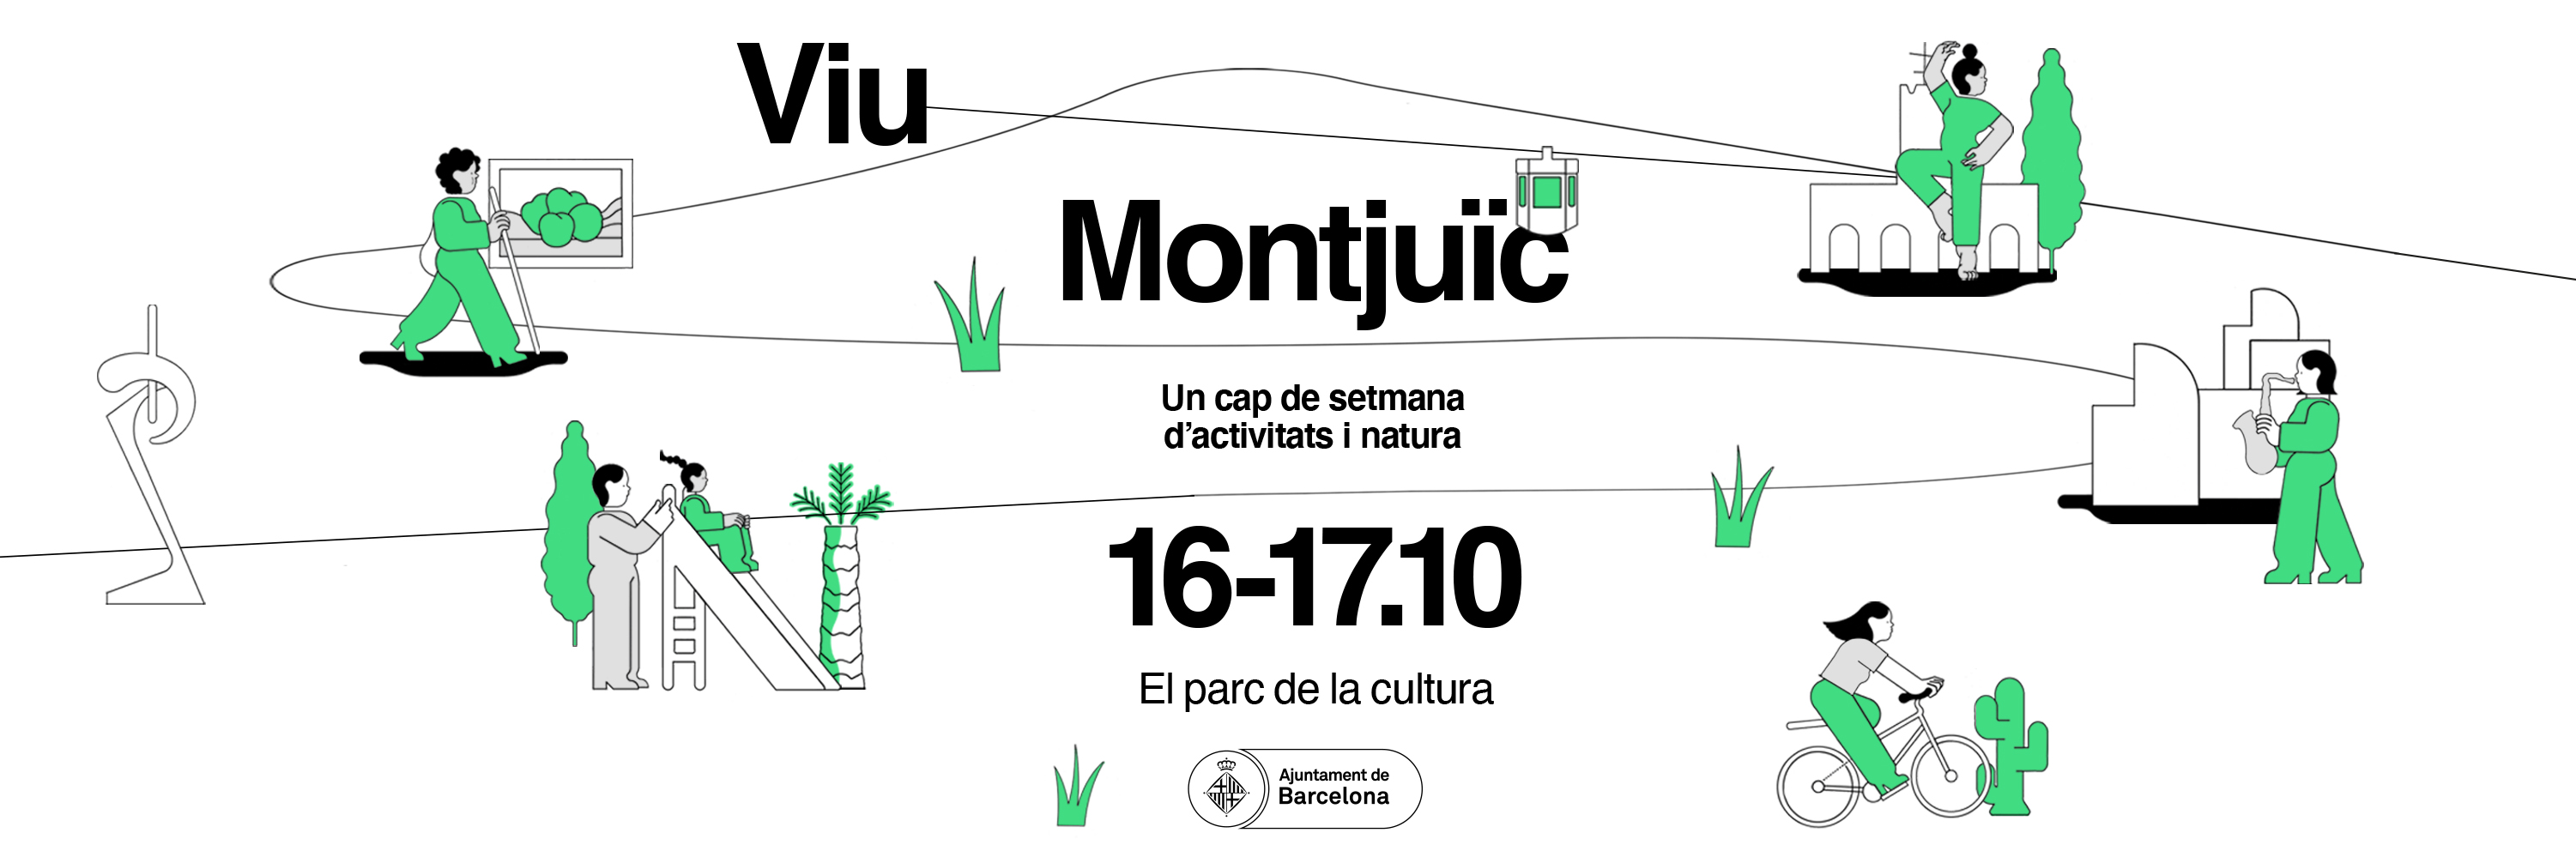 Viu Montjuïc, el parc de la cultura